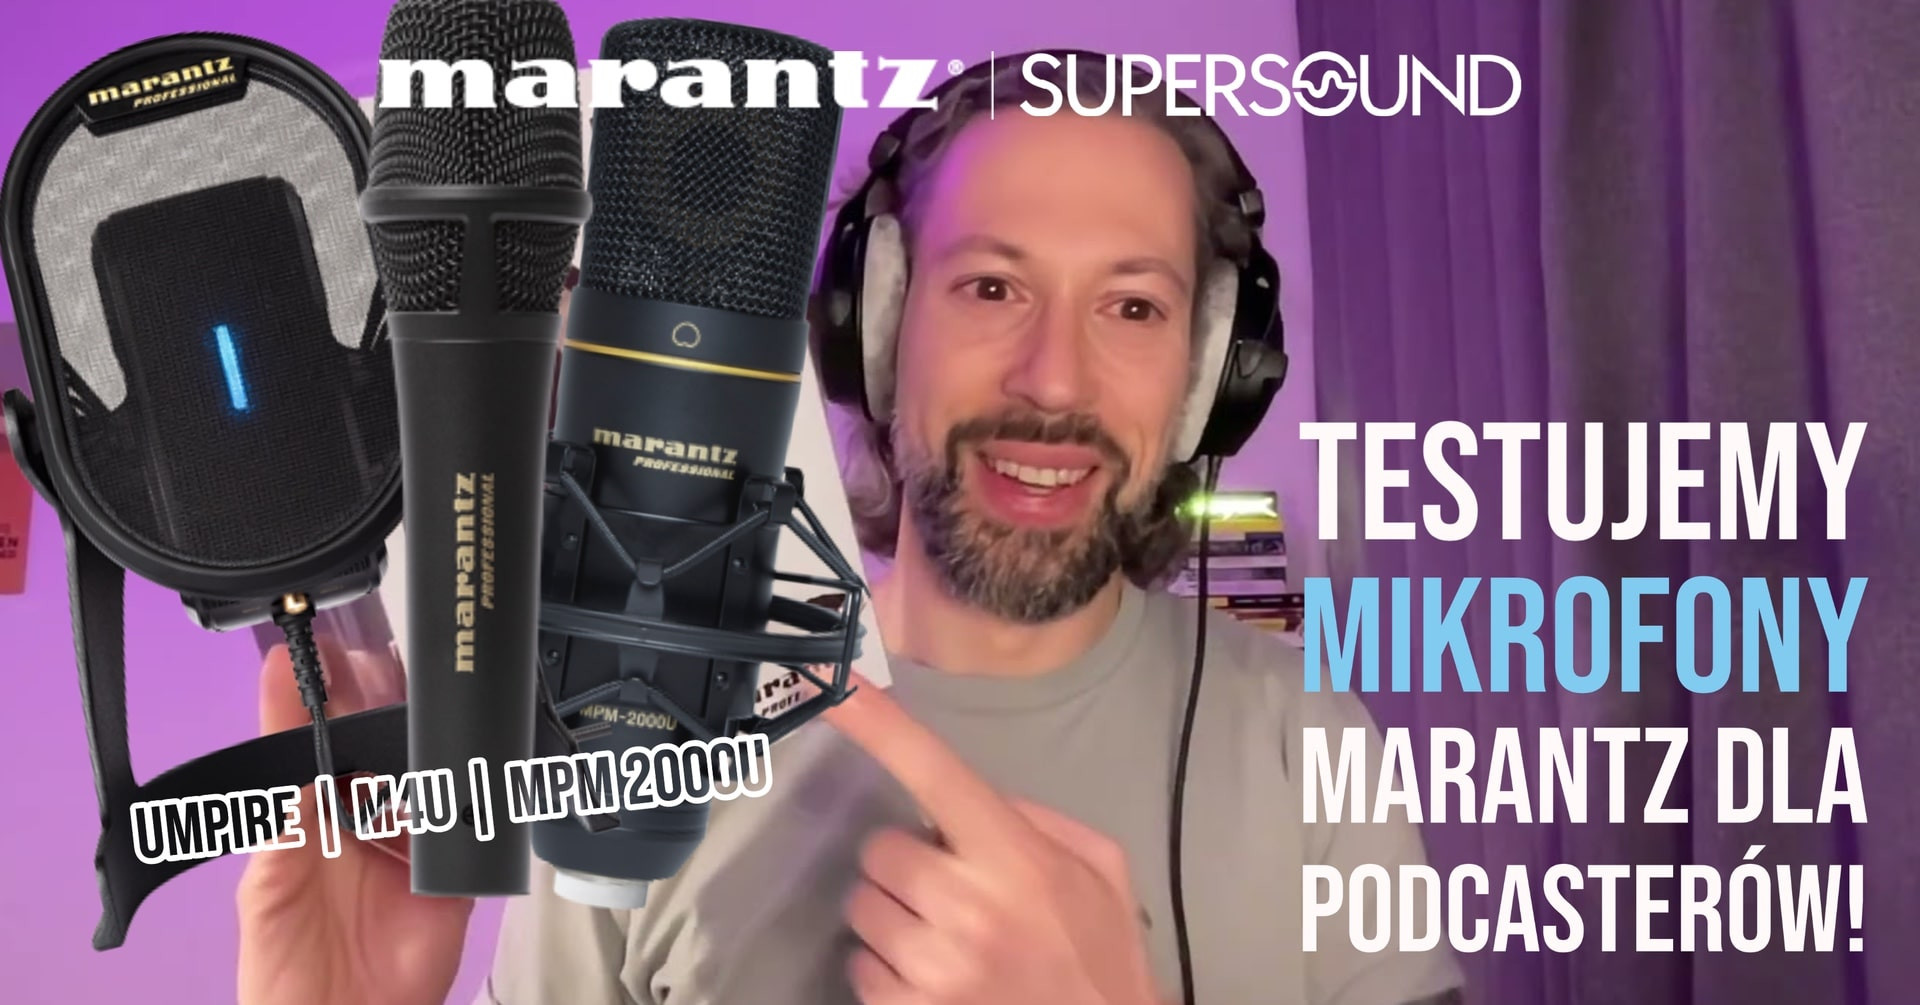 Testujemy mikrofony Marantz dla podcasterów!